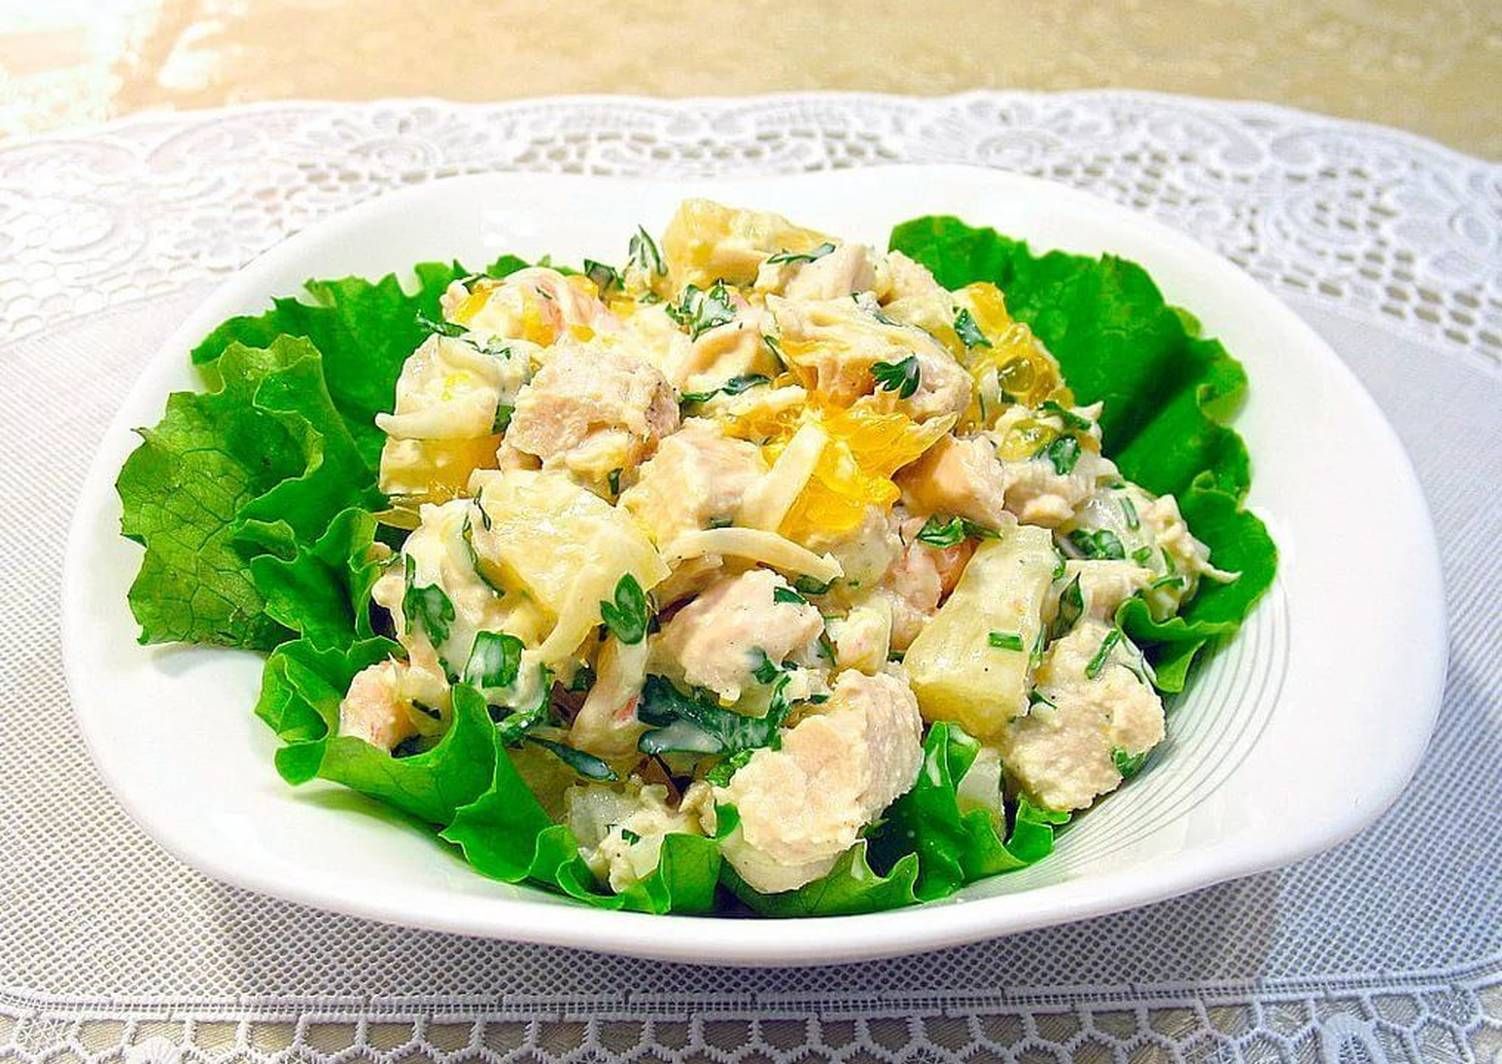 Салат с копченой курицей и ананасами - 9 очень вкусных классических  рецептов 